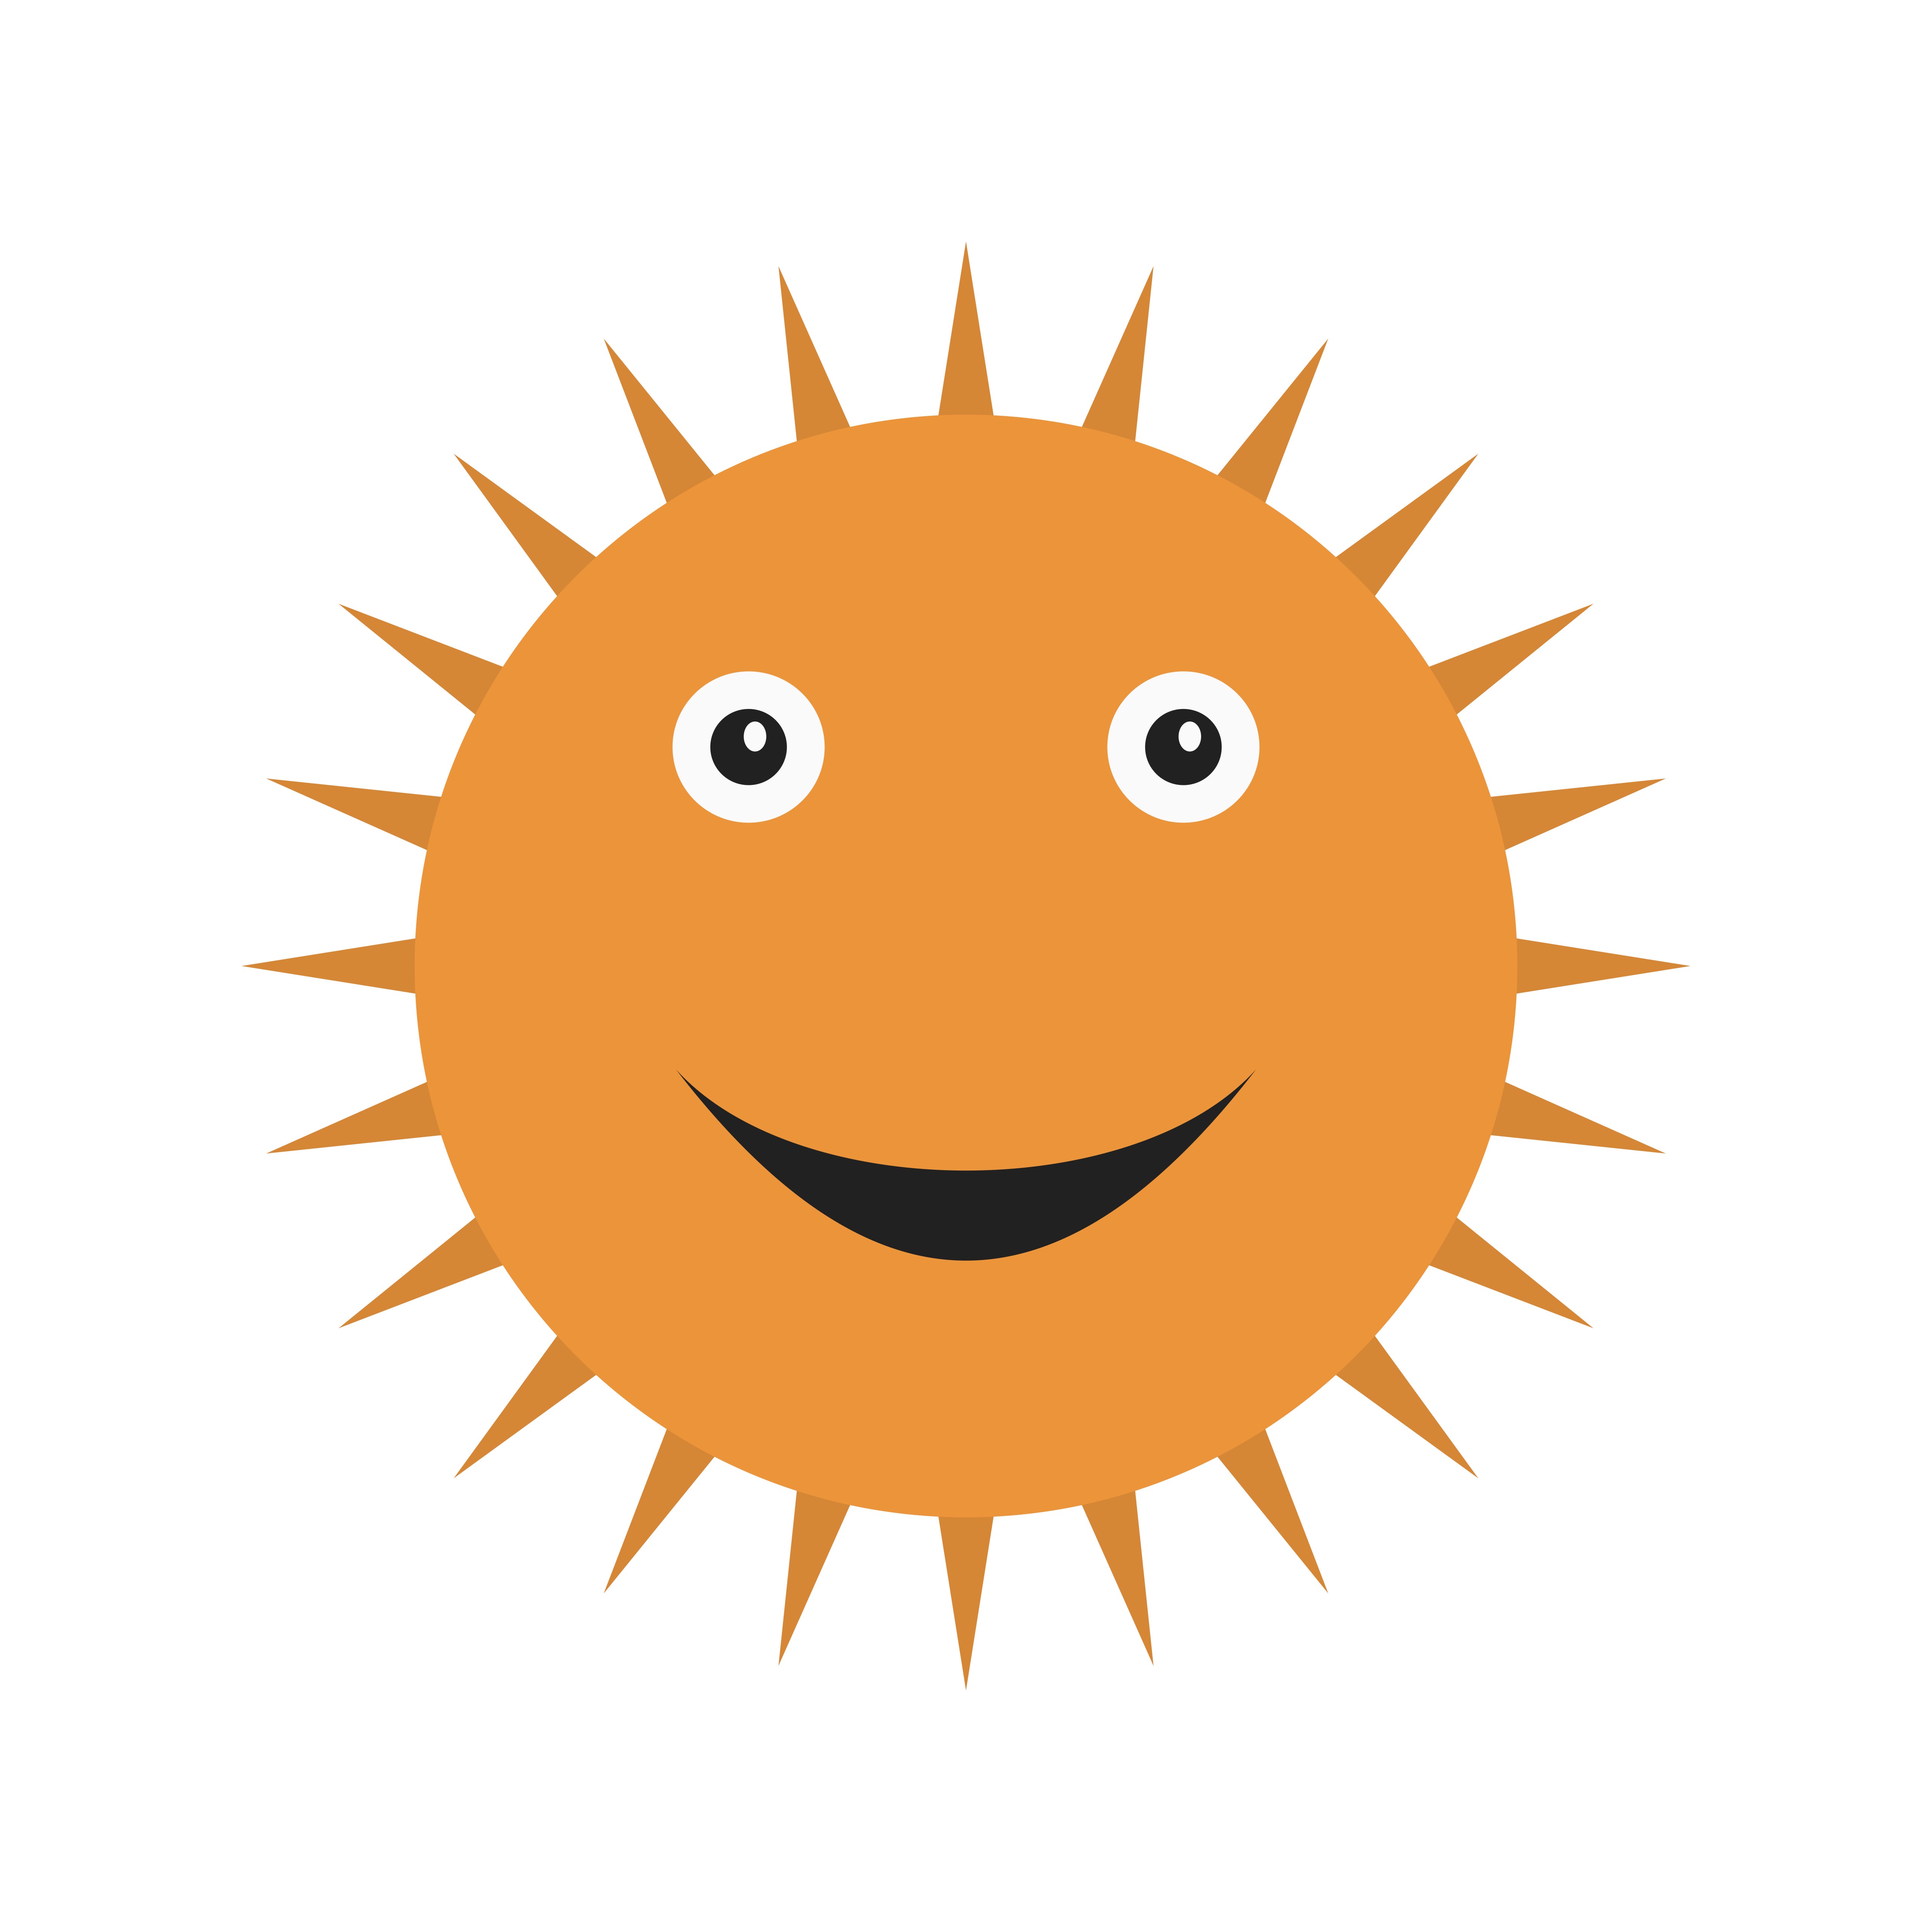 Sun Smiling Vector Icon 443336 Vector Art At Vecteezy